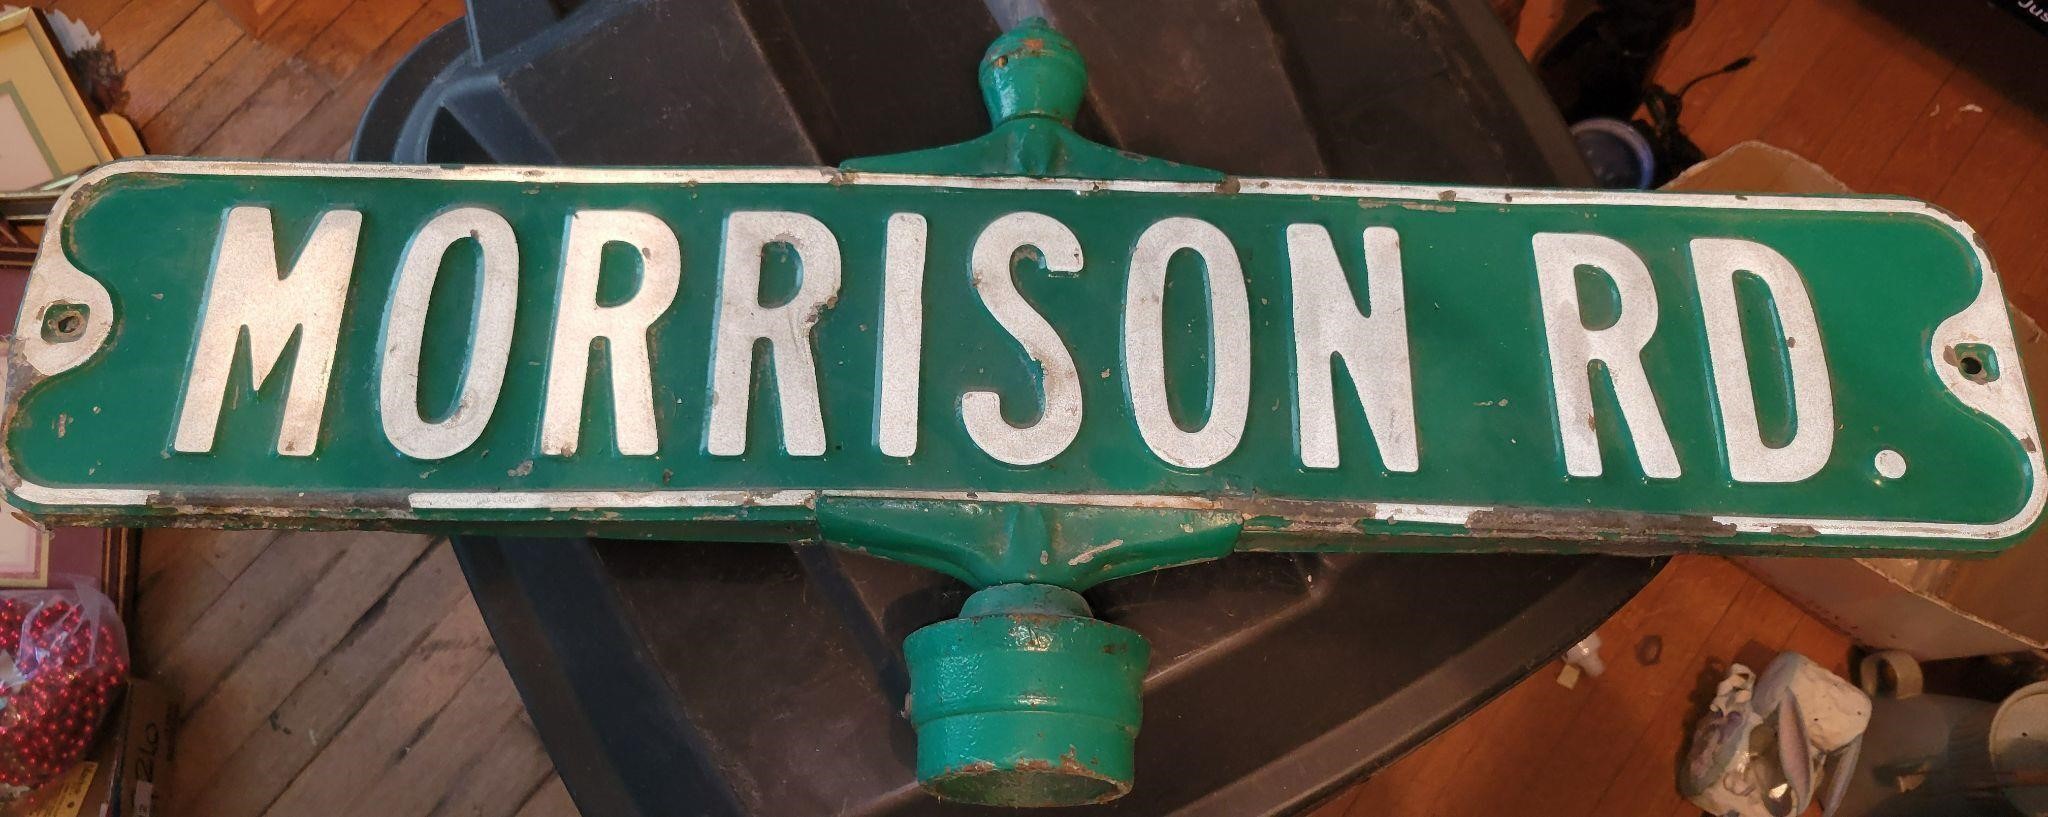 Vintage Morrison Rd Street Sign